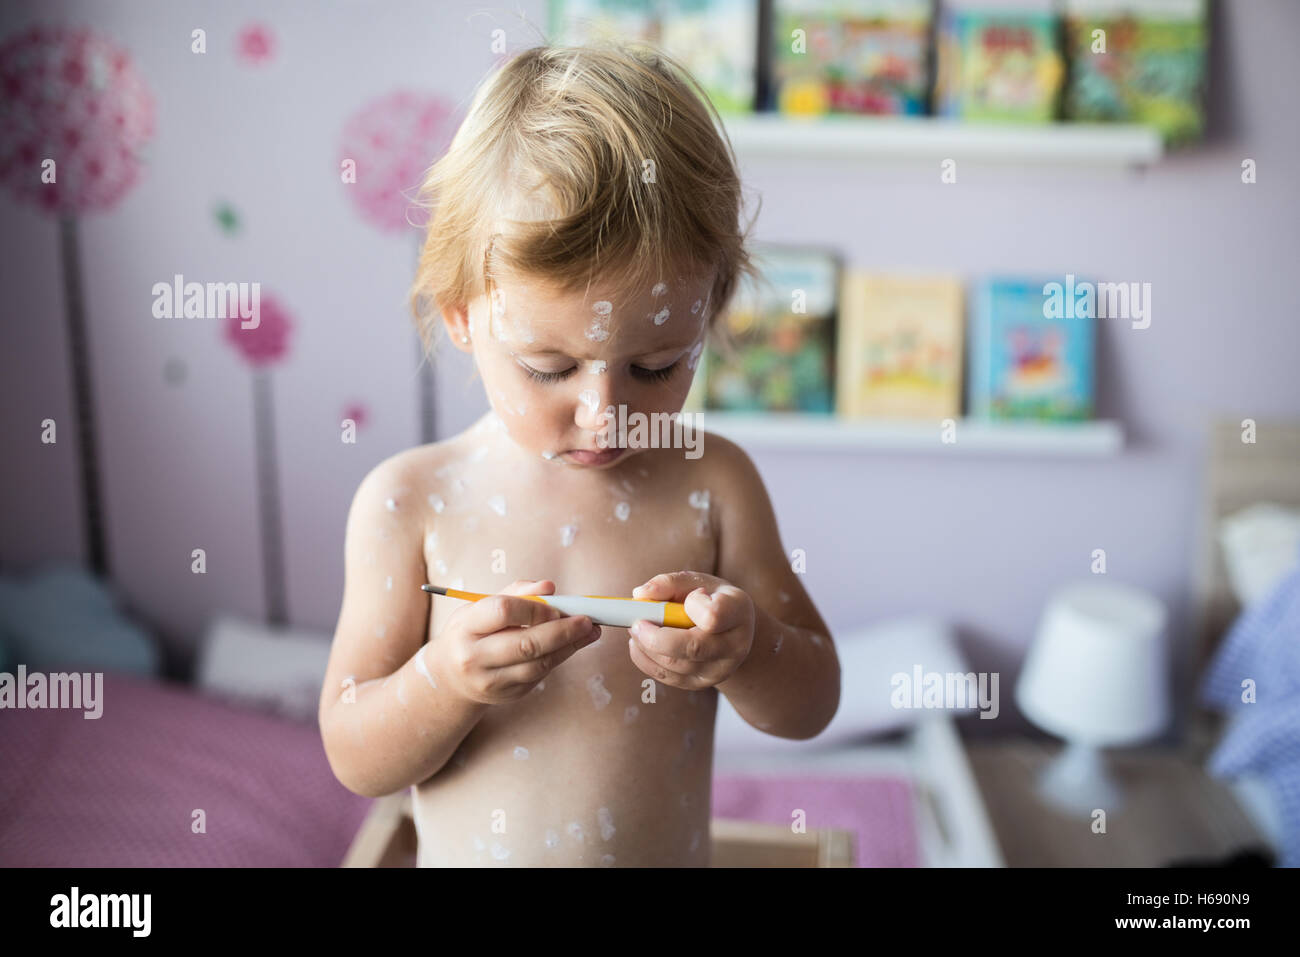 Bellissima bambina con la varicella, tenendo il termometro Foto Stock